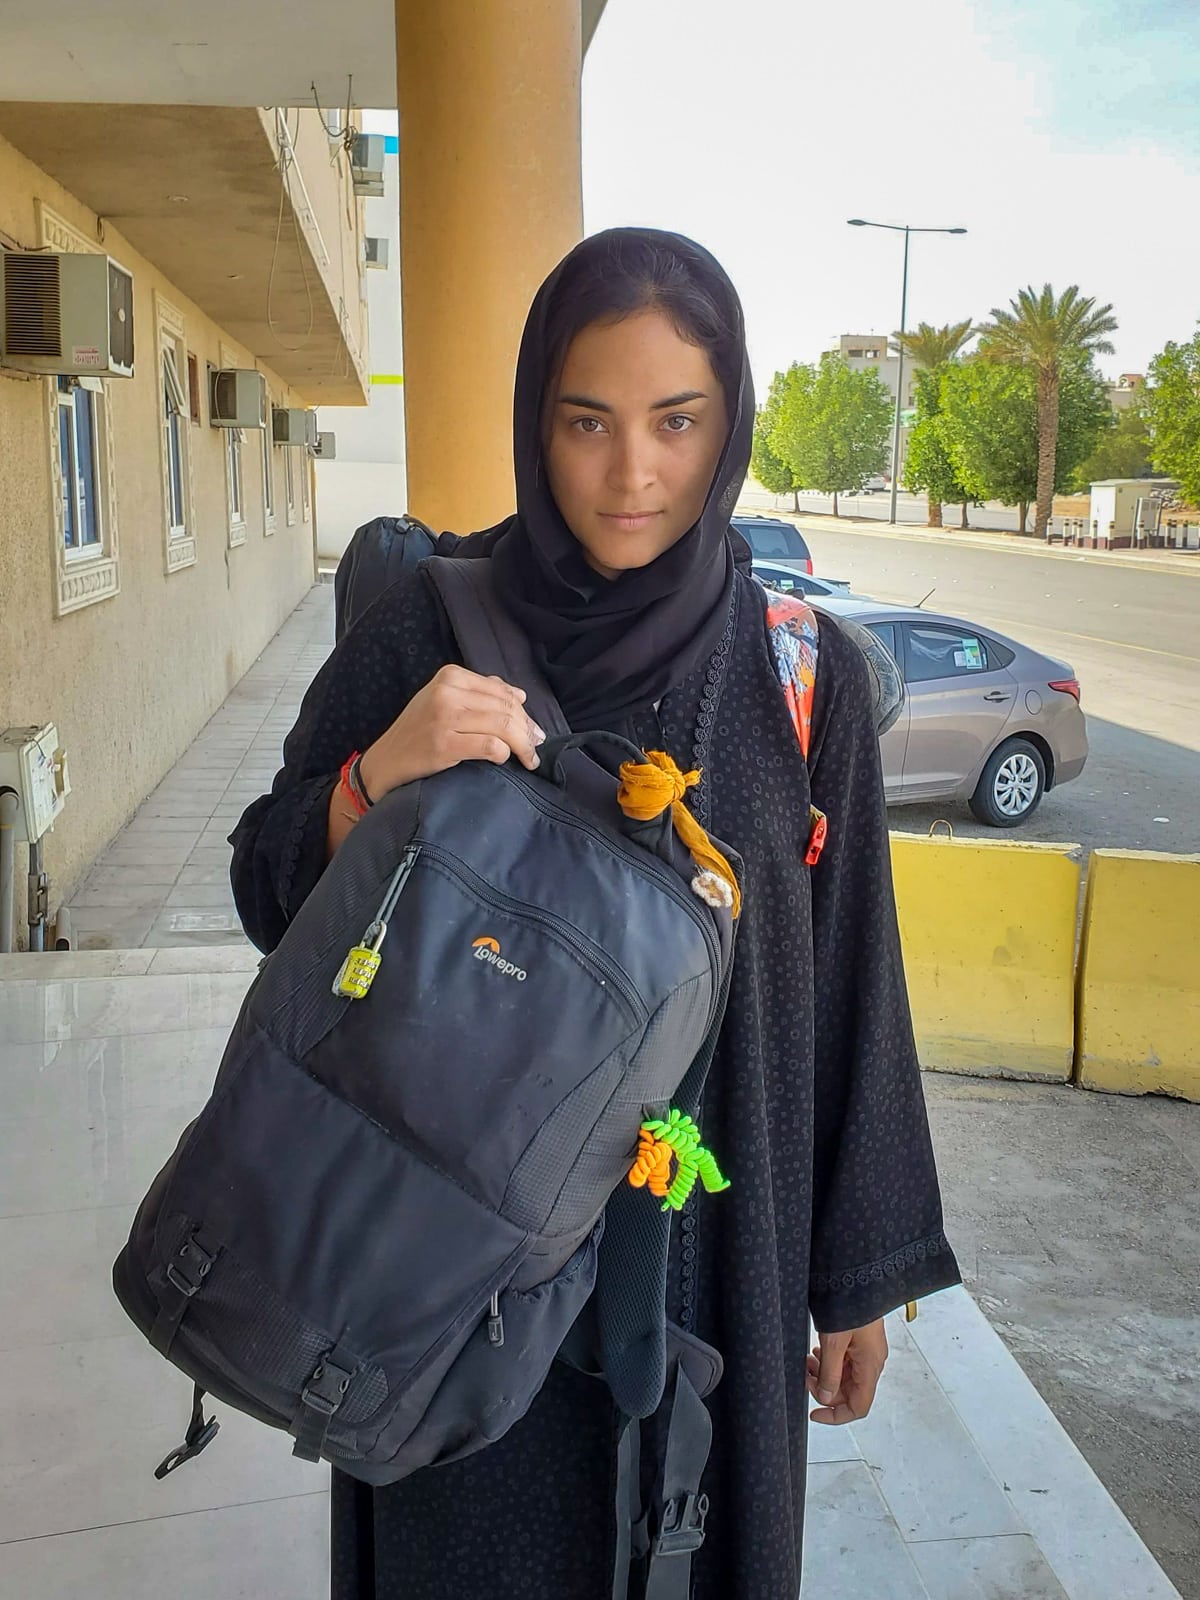 Alex with camera bag and backpack in a black abaya in Riyadh, Saudi Arabia